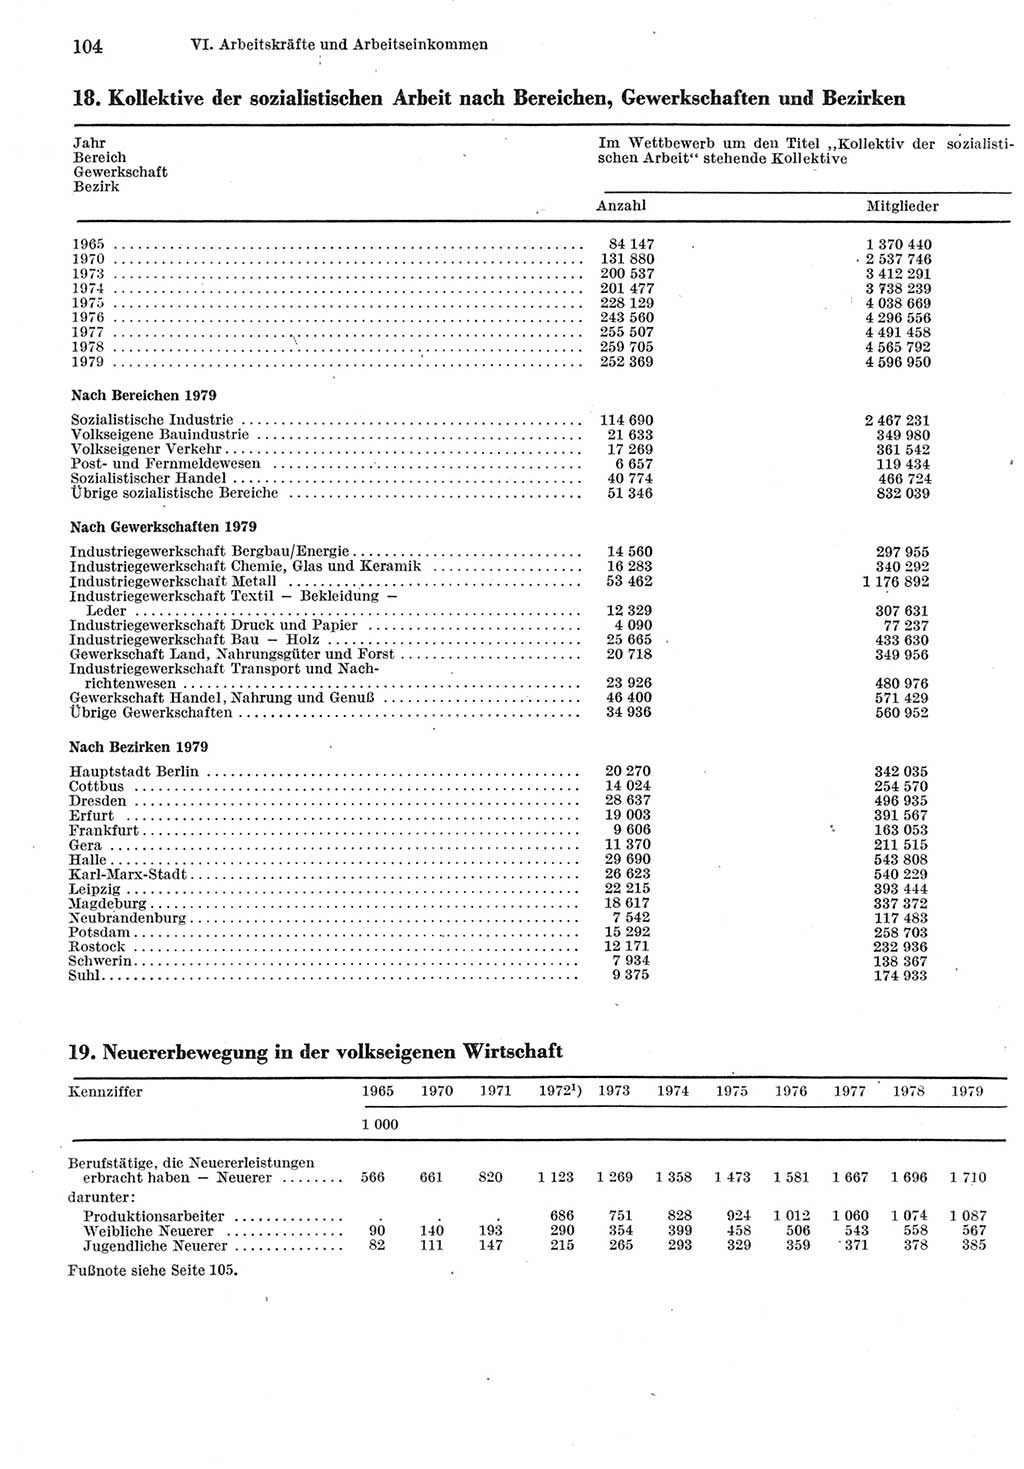 Statistisches Jahrbuch der Deutschen Demokratischen Republik (DDR) 1980, Seite 104 (Stat. Jb. DDR 1980, S. 104)